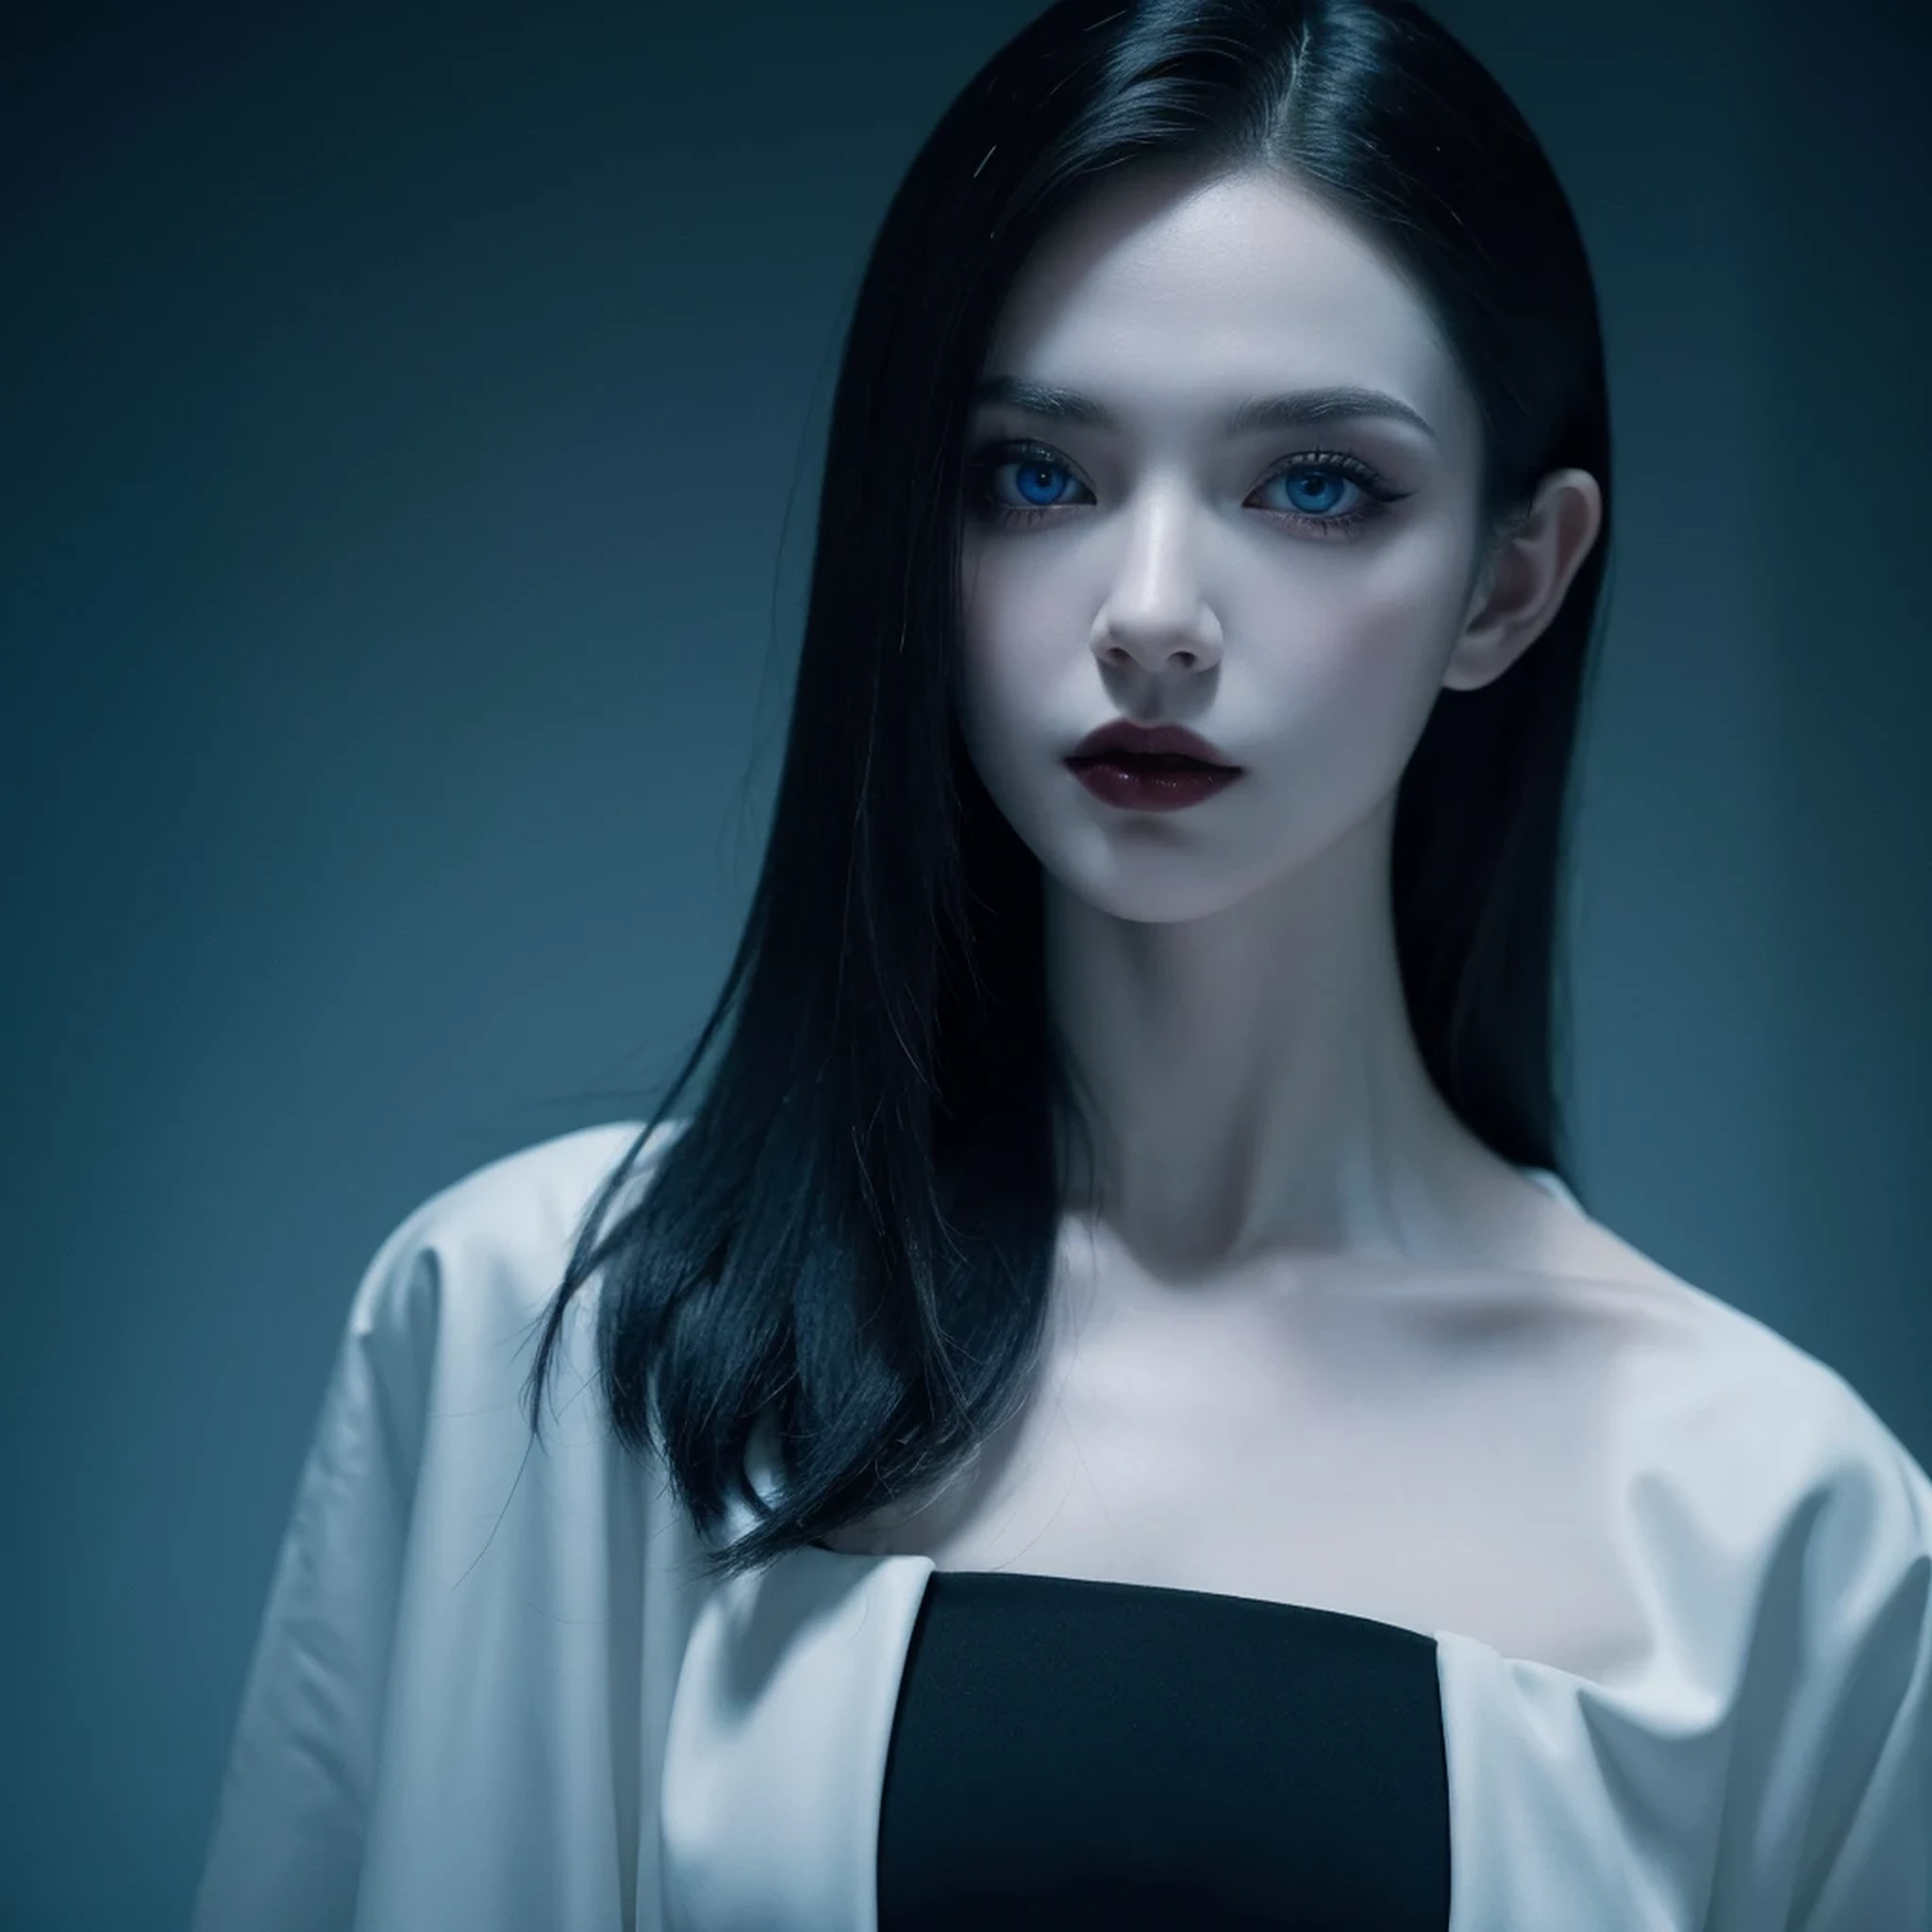 ((Meisterwerk)), ultra-realistisch, Porträt eines schönen blassen Vampirs mit (schwarzer Emaille), ein tiefdunkles Make-up, strahlend blaue Augen, in einer dunklen und düsteren Umgebung. (Die Eingabeaufforderung ist auf Portugiesisch)